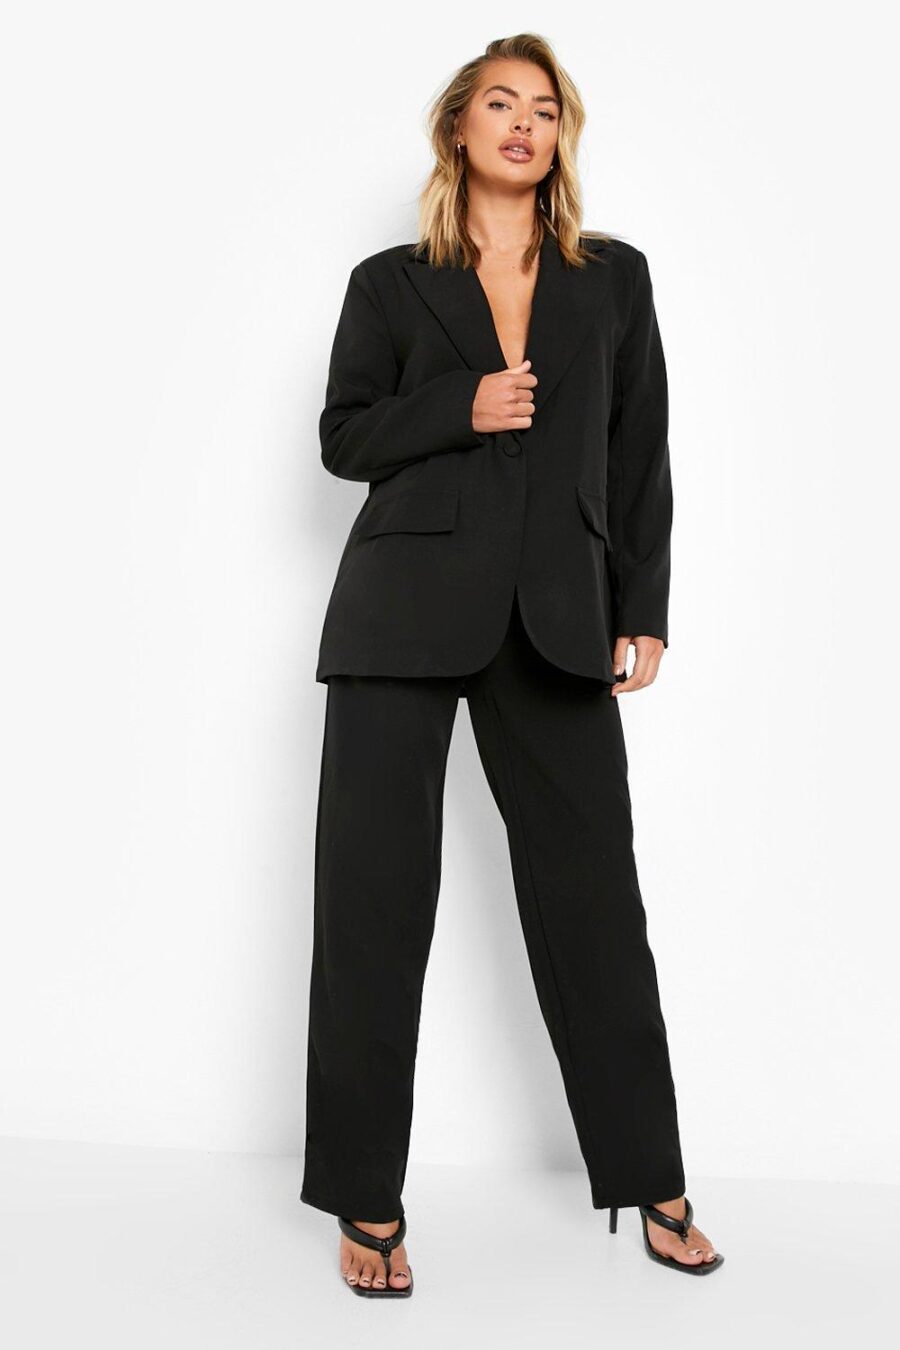 Boohoo-czarne-spodnie-materialowe-eleganckie-plus-size-46